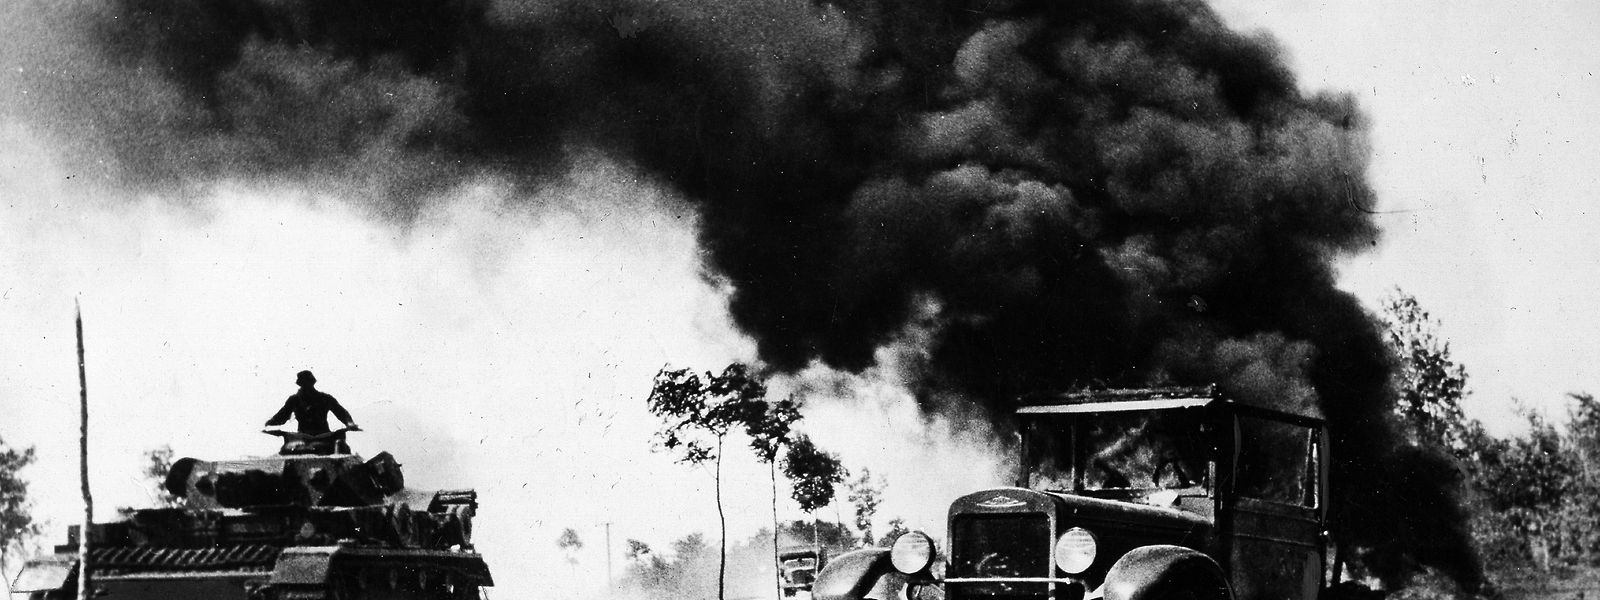 Am 22. Juni 1941 beginnt die „Operation Barbarossa“: Auf dem Foto ist ein deutscher Panzer IV zu sehen, rechts ein brennendes sowjetisches Auto.